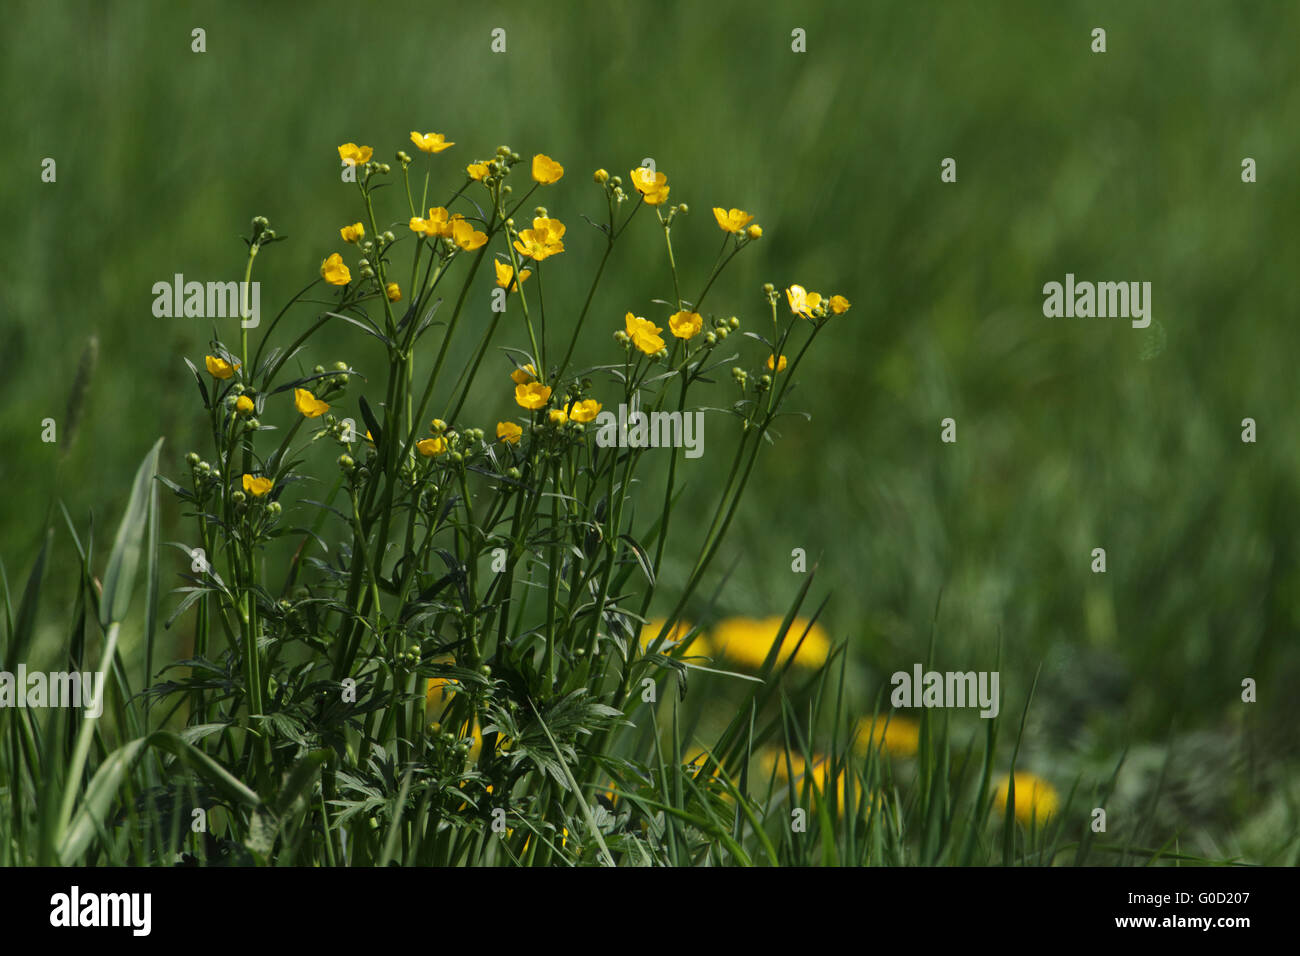 Meadow buttercup, Ranunculus acris Stock Photo